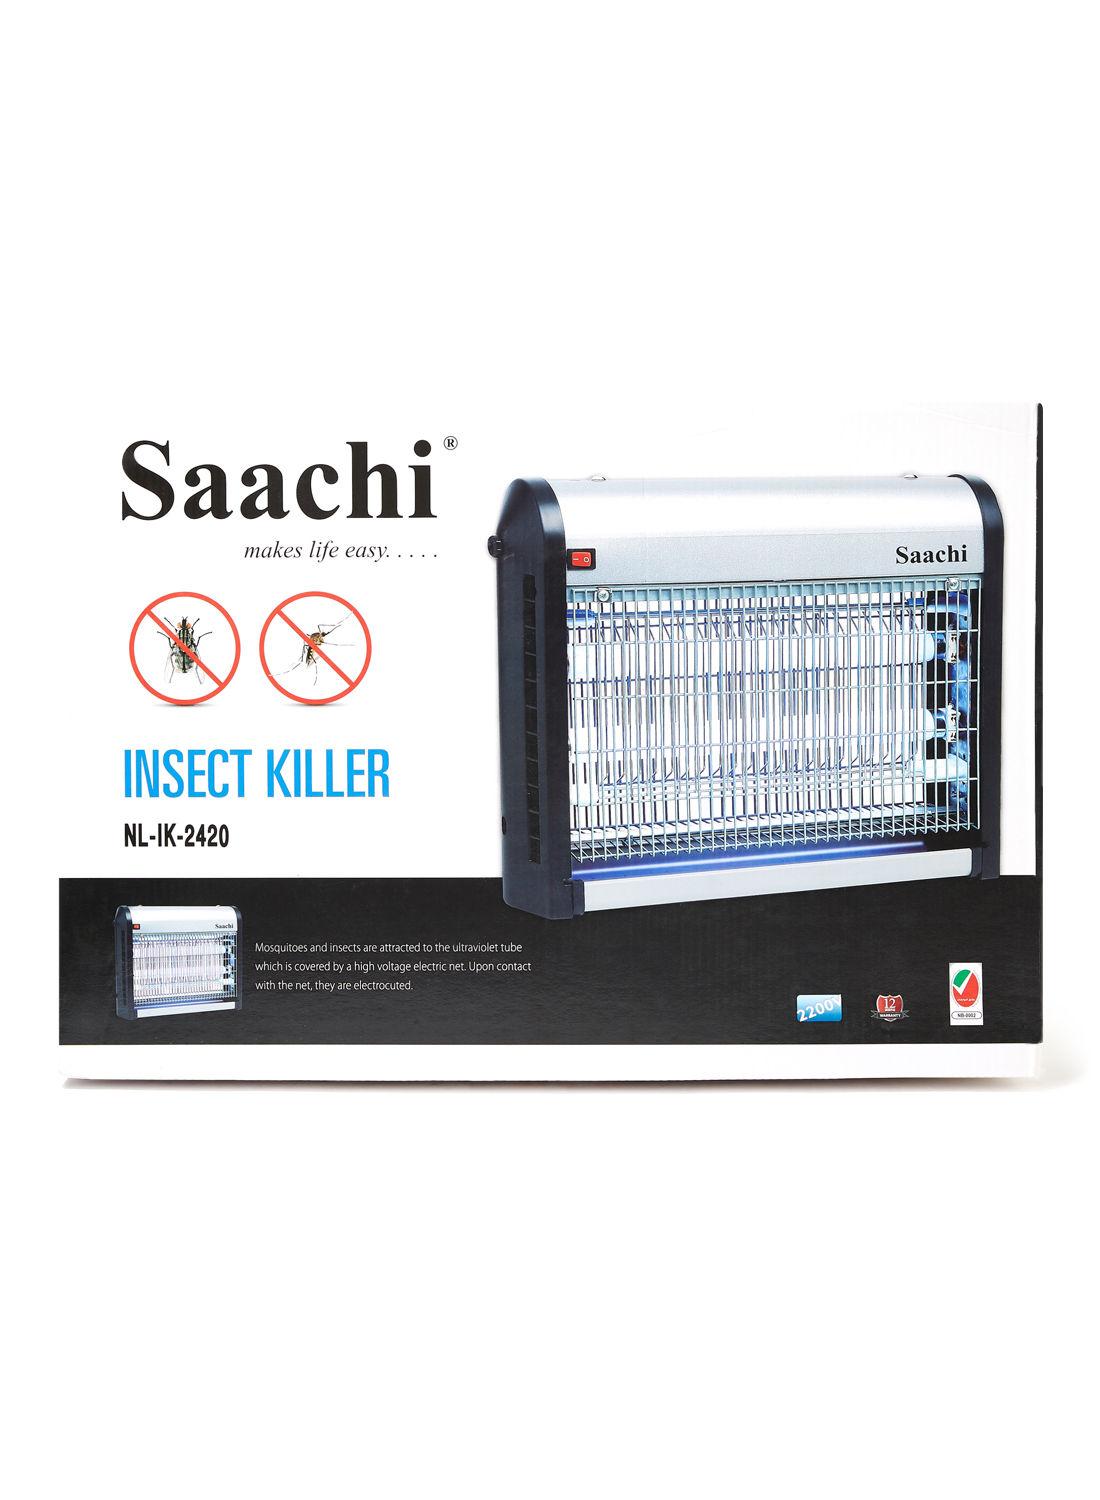 صاعق الحشرات الكهربائي Saachi Insect Killer Medium 28W - cG9zdDoyNzA5NDA=